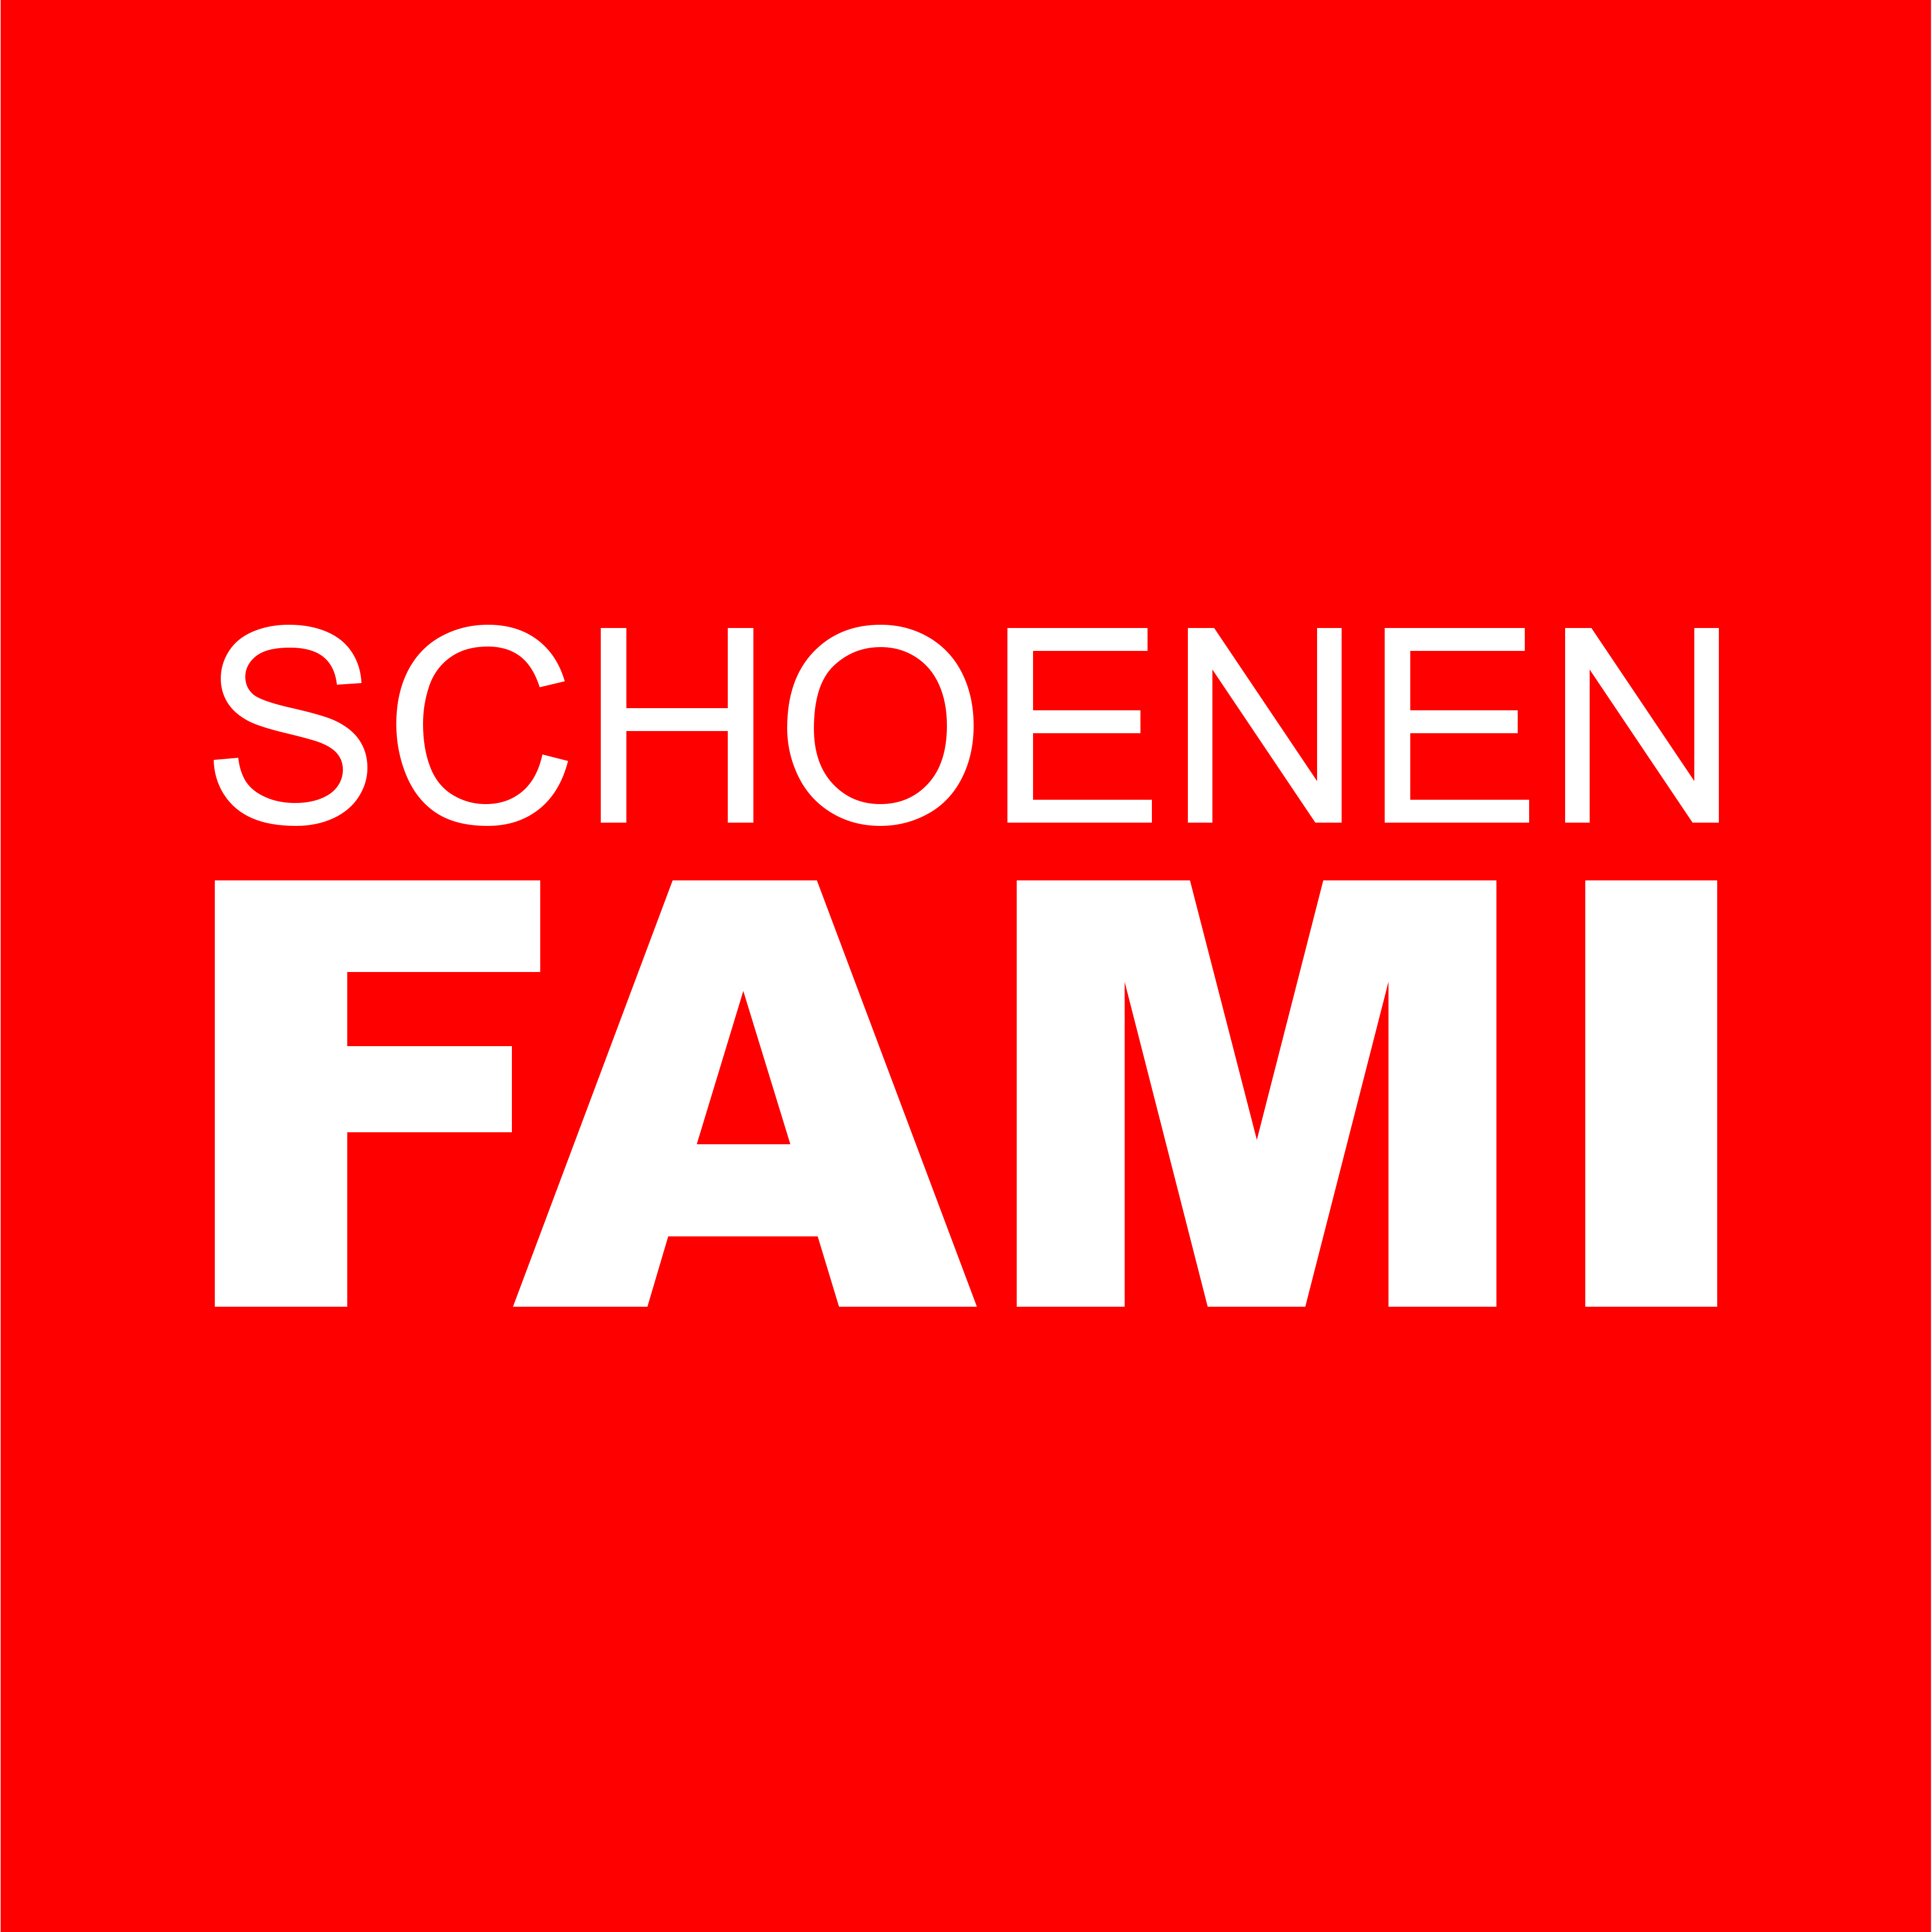 Schoenen Fami logo